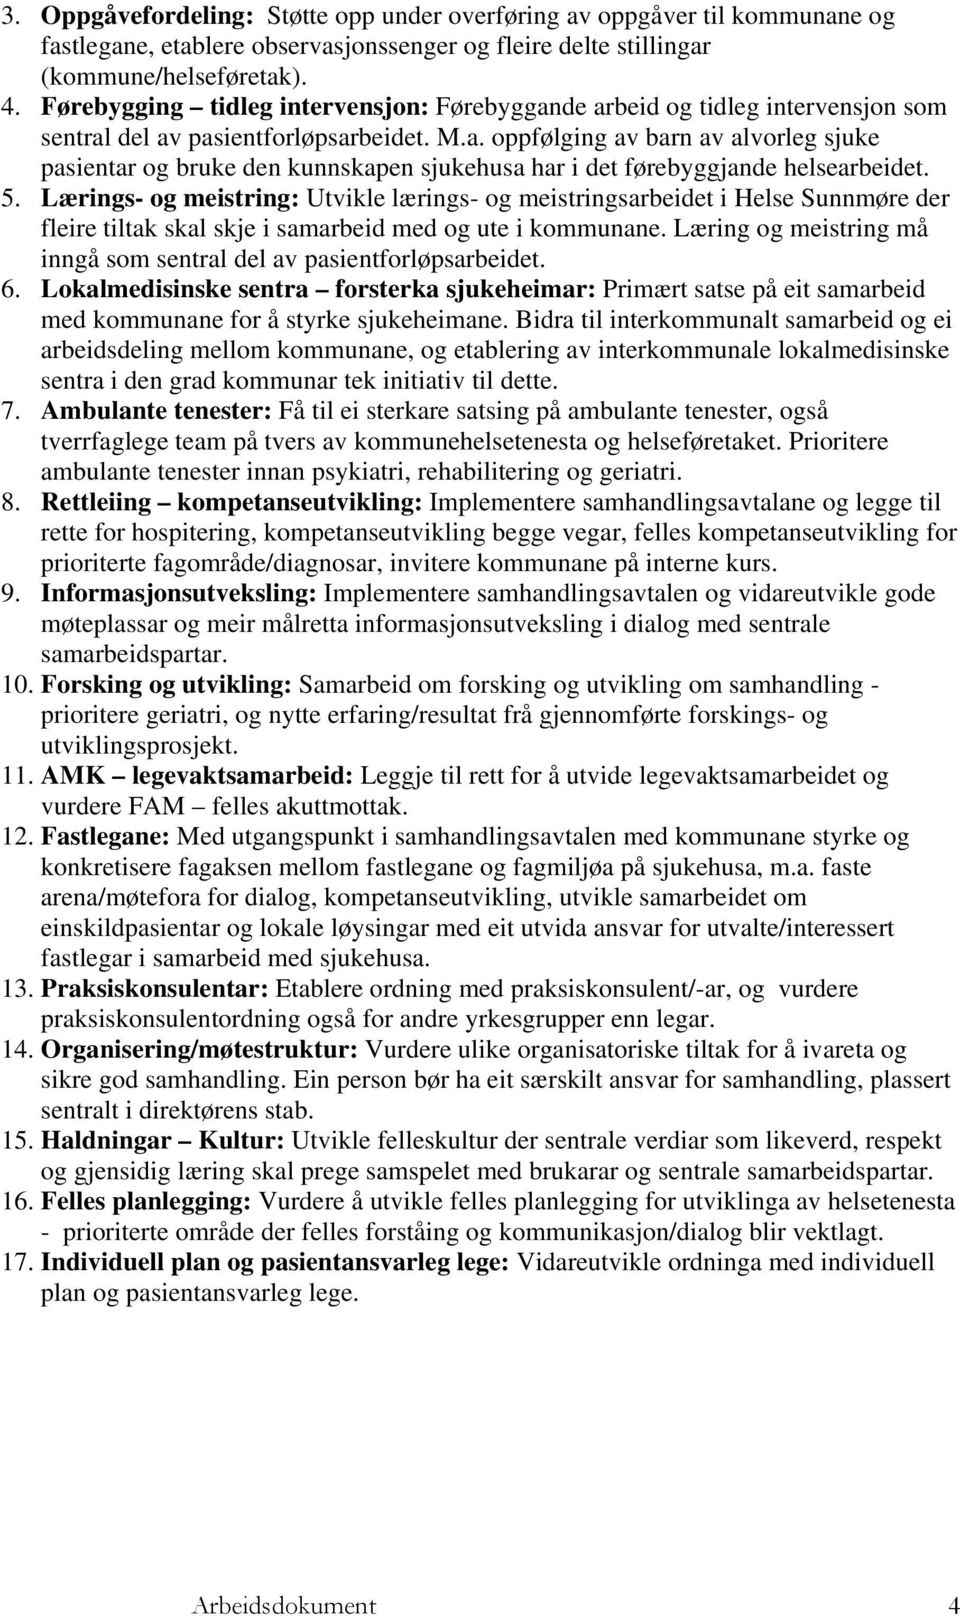 5. Lærings- og meistring: Utvikle lærings- og meistringsarbeidet i Helse Sunnmøre der fleire tiltak skal skje i samarbeid med og ute i kommunane.